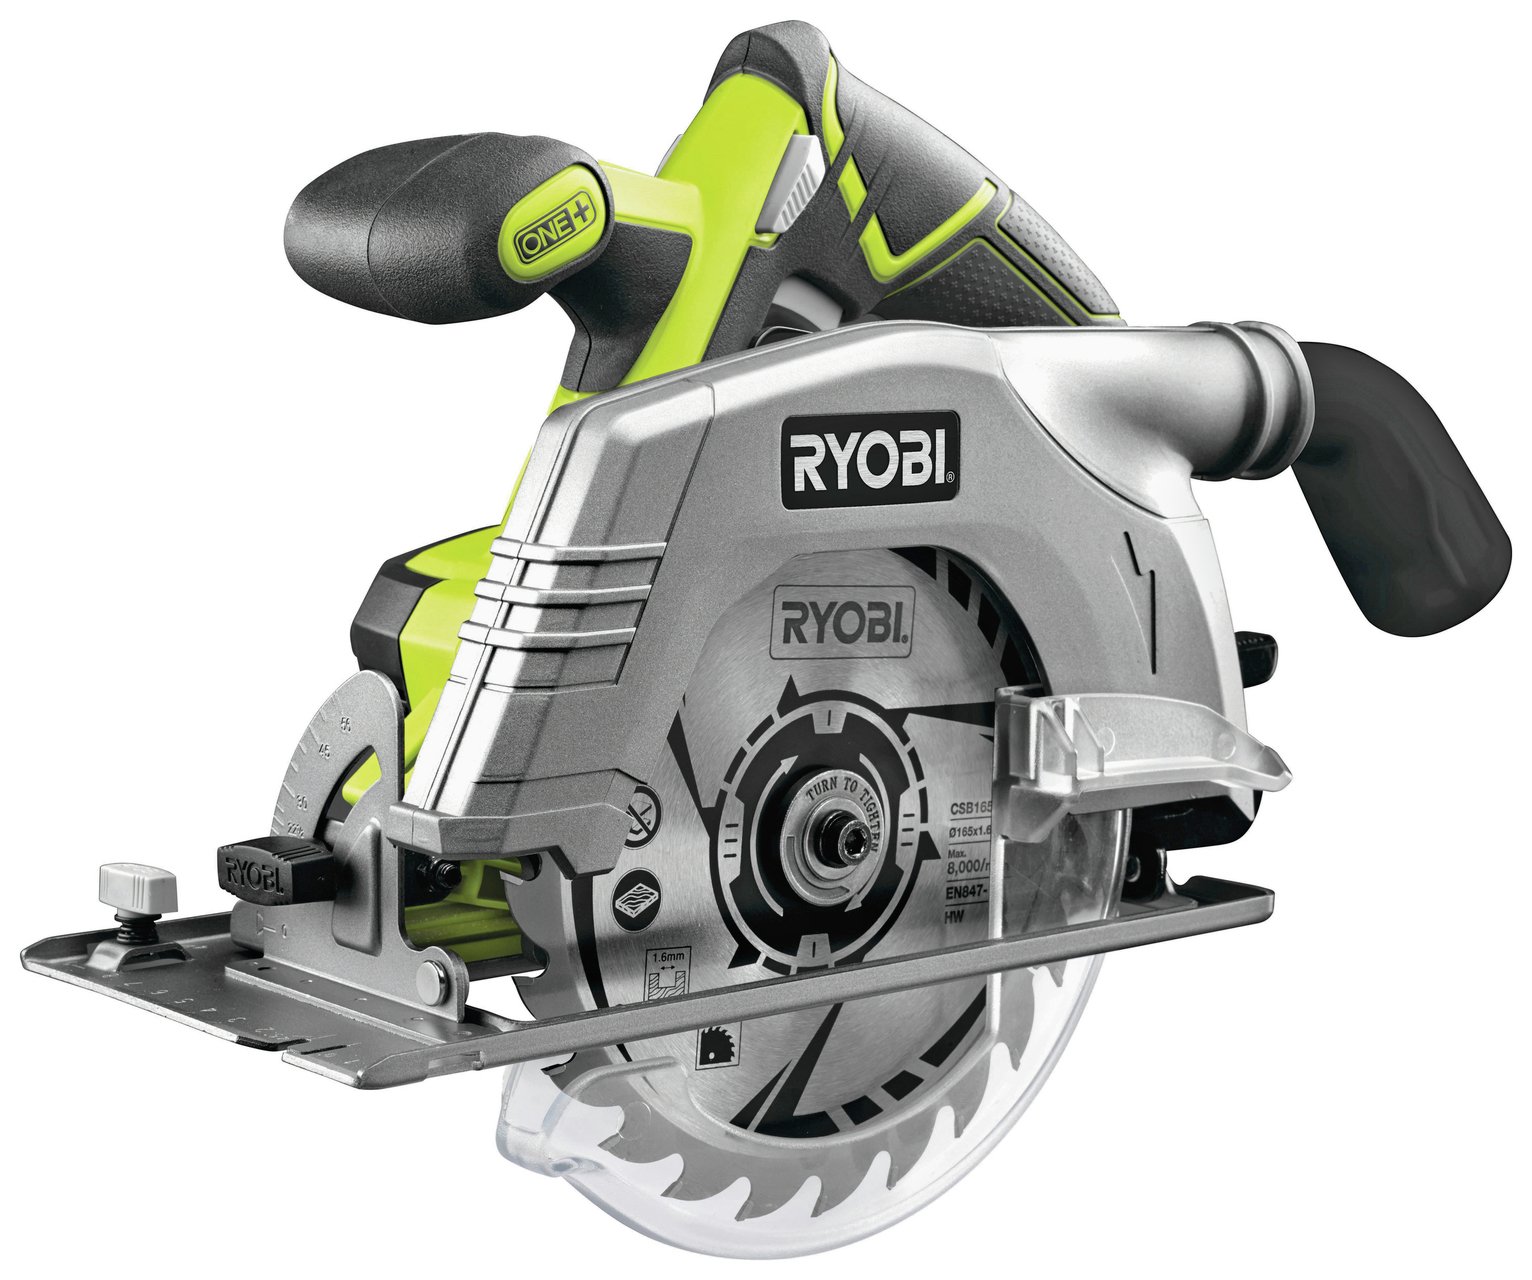 Ryobi R18CS-0 Circular Saw Bare Tool - 18V